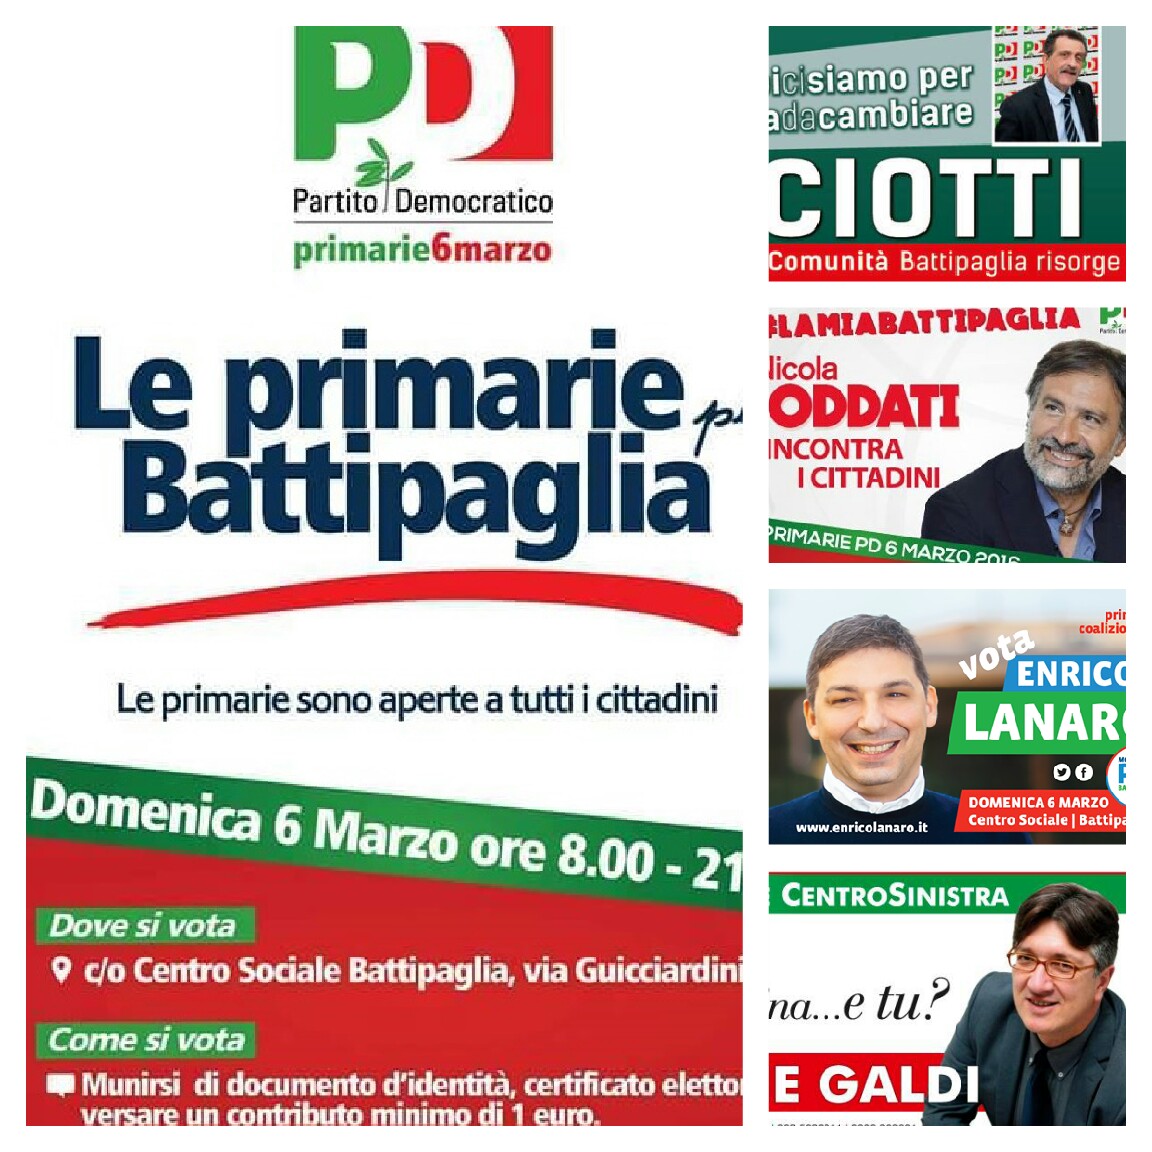 Primarie Battipaglia-Ciotti-Oddati-Lanaro-Galdi